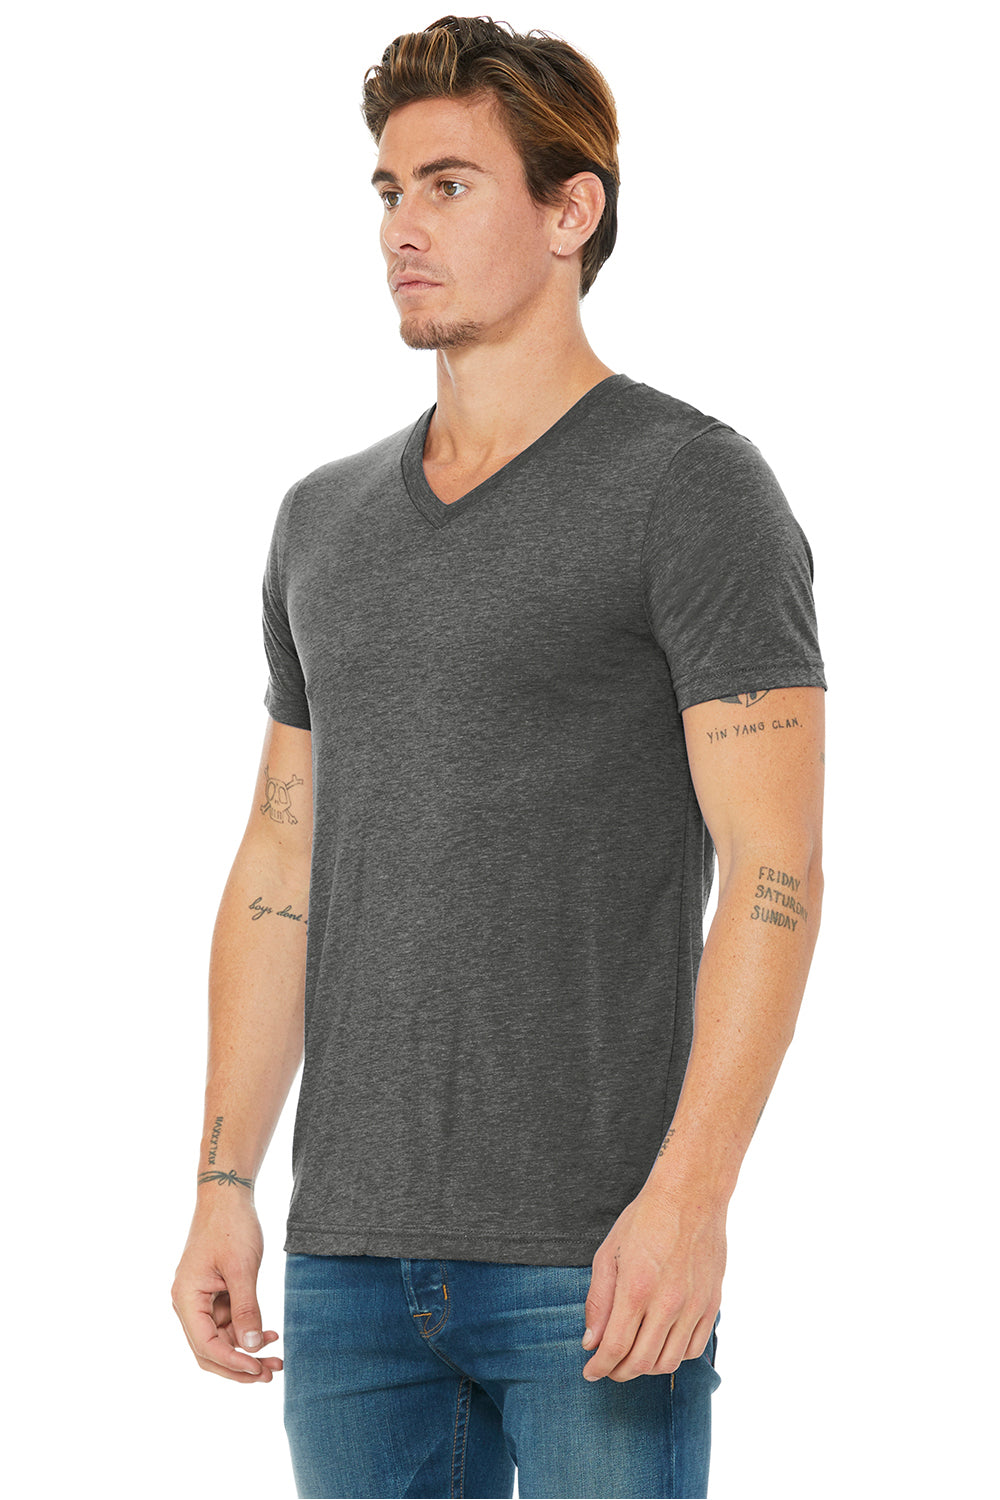 Bella + Canvas BC3415/3415C/3415 Mens Short Sleeve V-Neck T-Shirt Grey Model 3Q